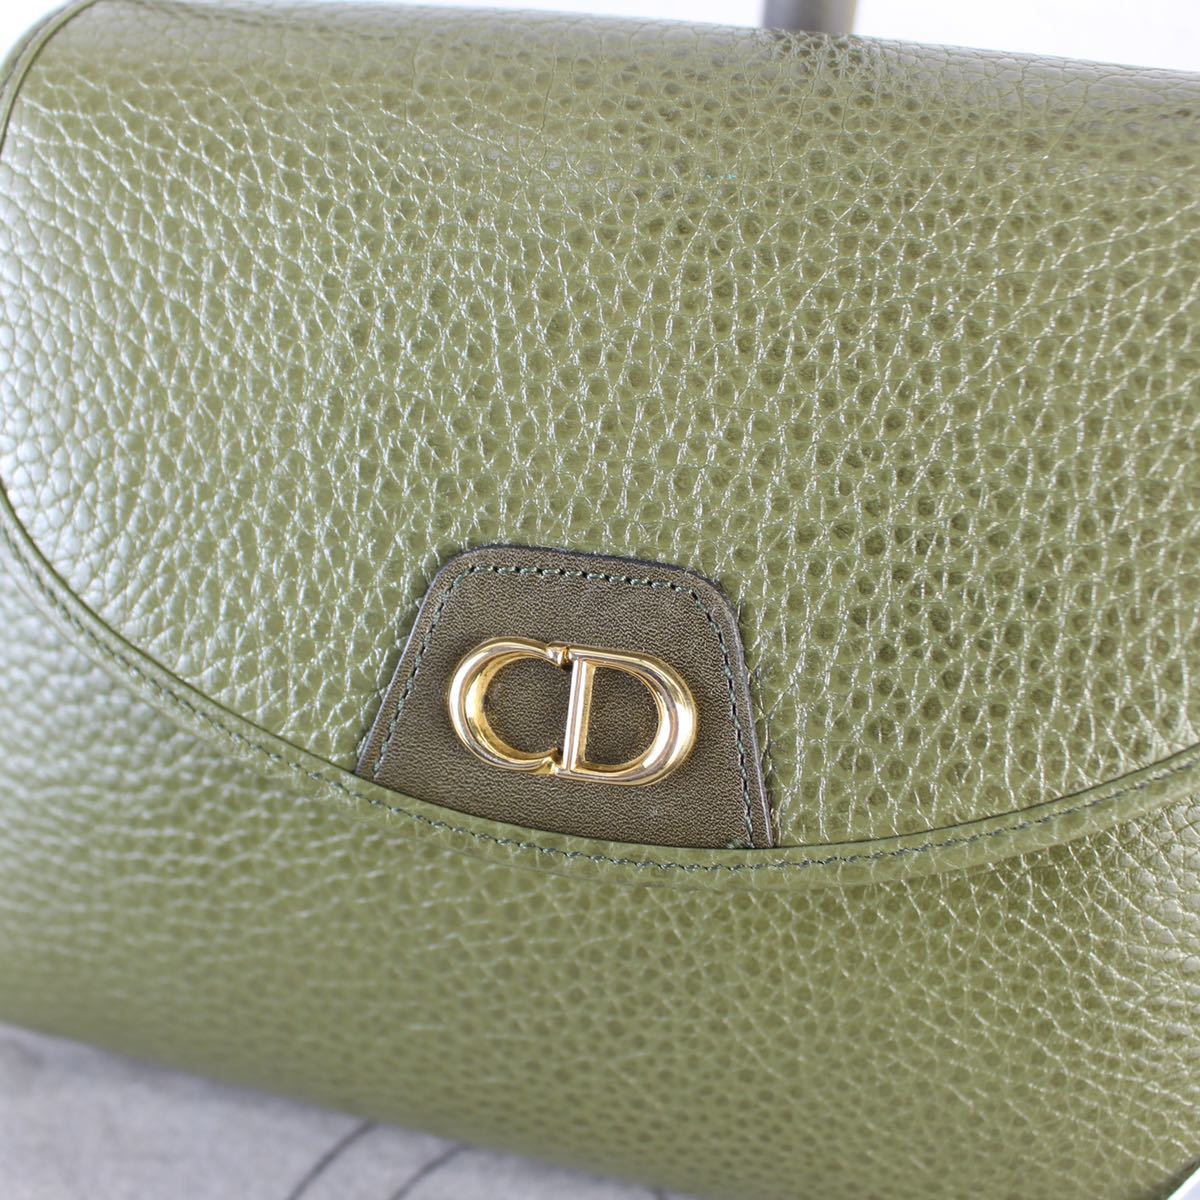 新品タグ付Christian Dior LOGO LEATHER SHOULDER BAG MADE IN FRANCE